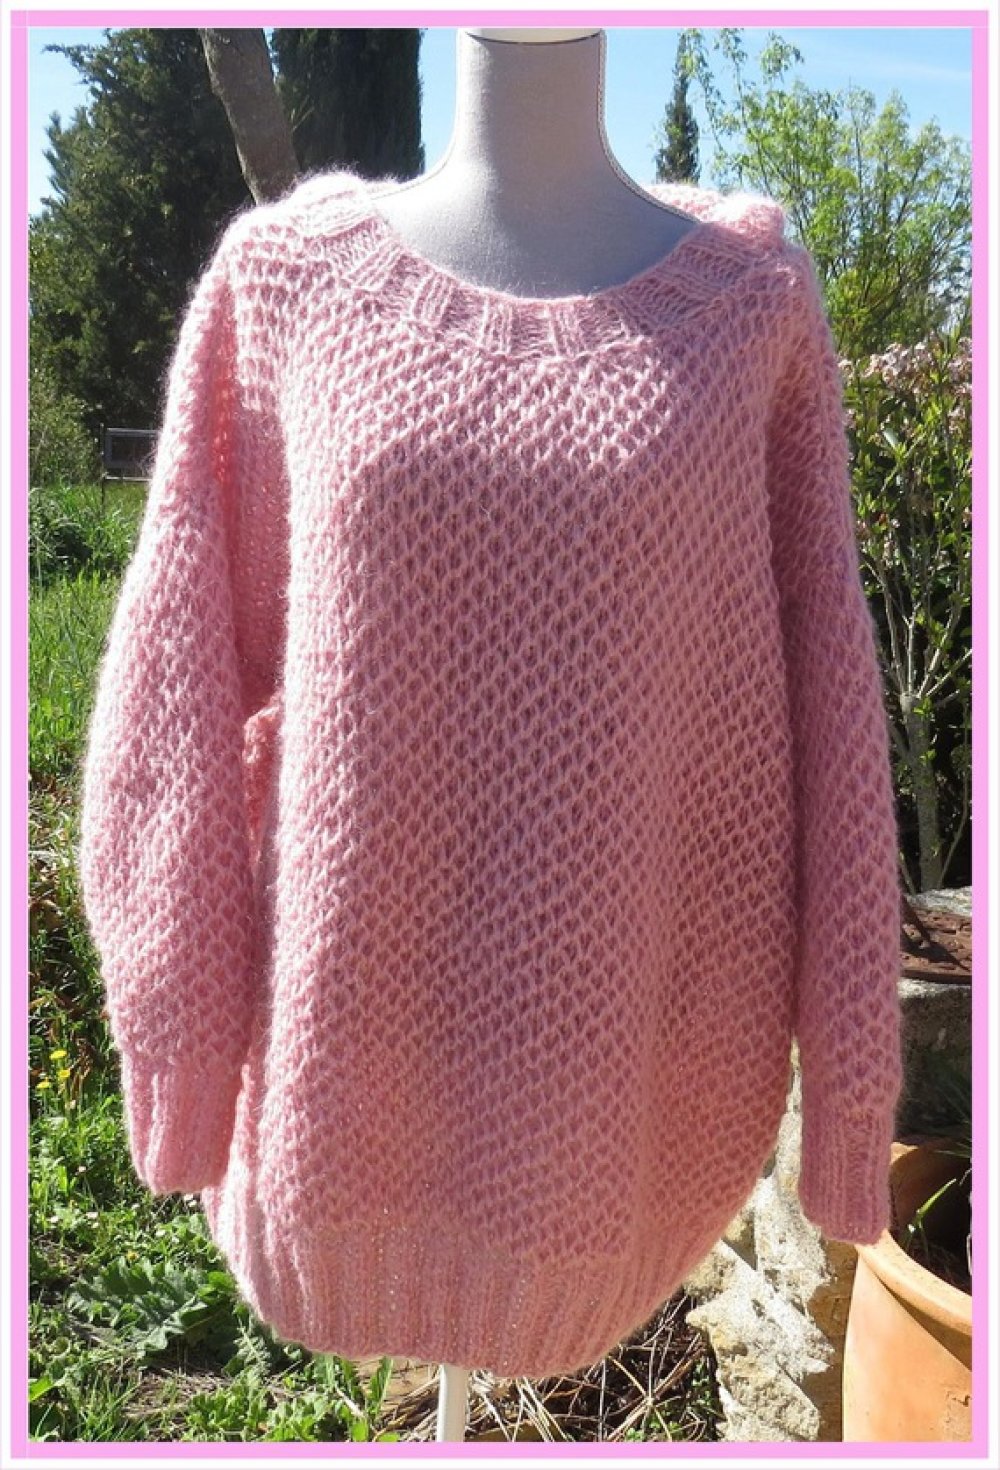 Couverture en tricot Nid d'abeille - Désert rose - Mushie